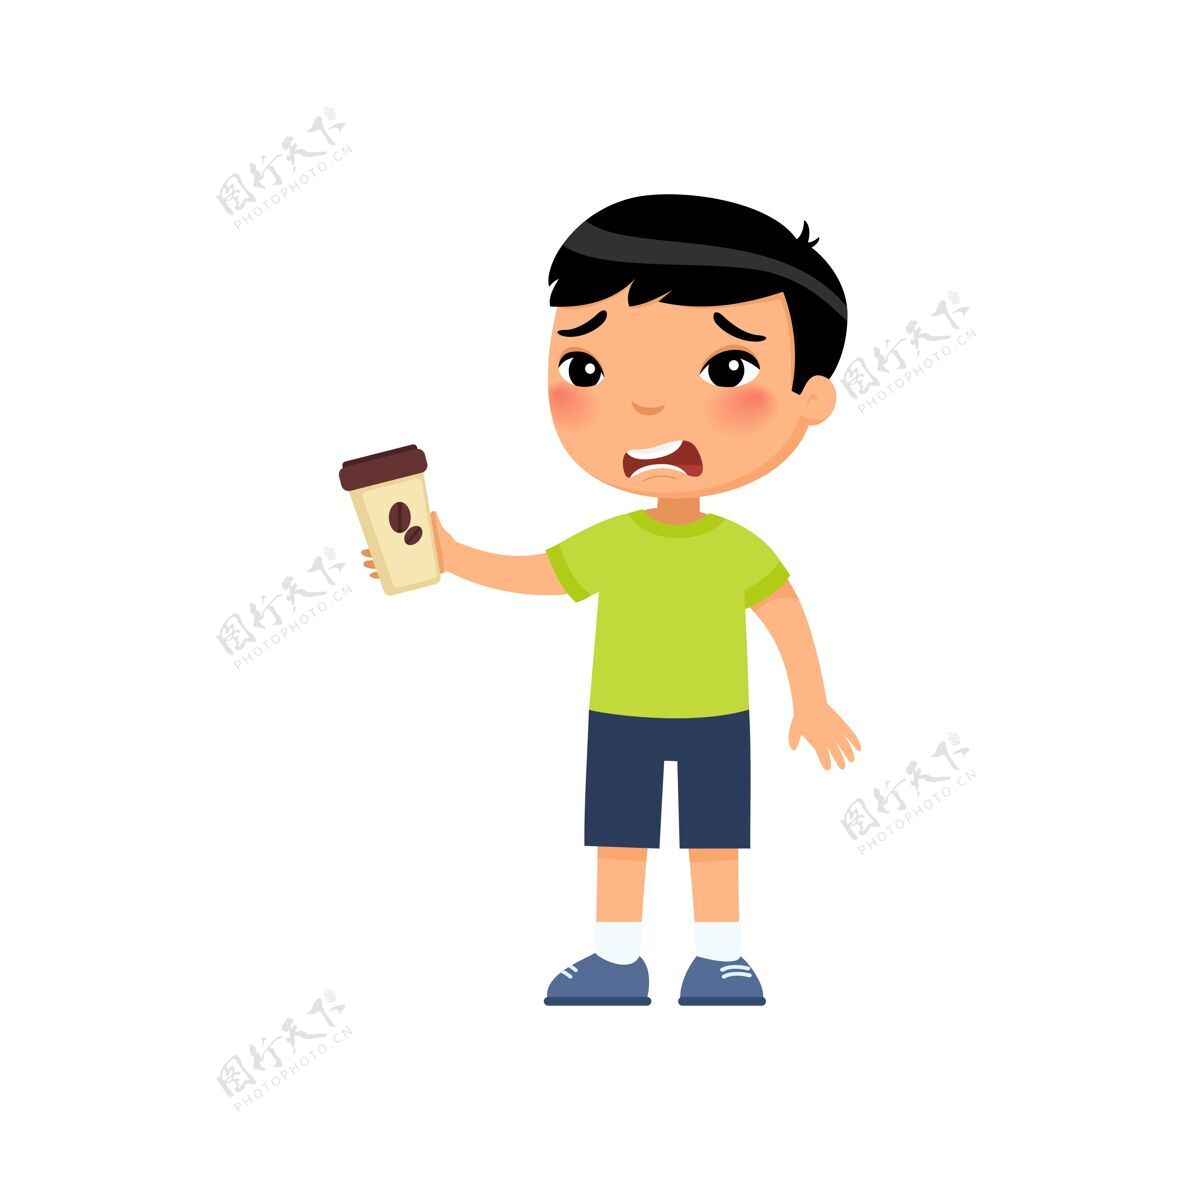 意式咖啡亚洲小男孩喝苦味能量饮料杯子咖啡人